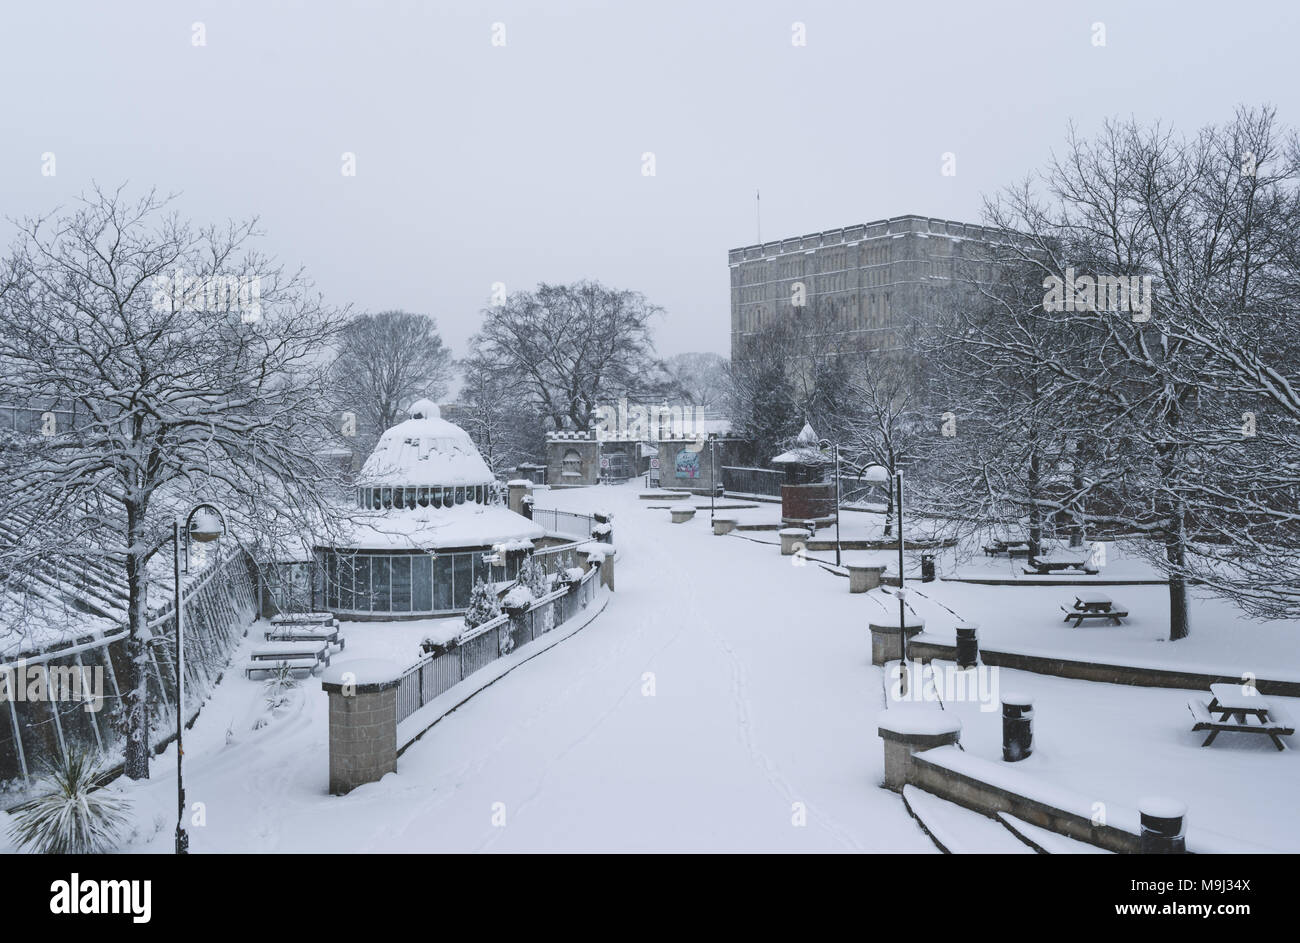 Norwich en invierno cubierto de nieve Foto de stock